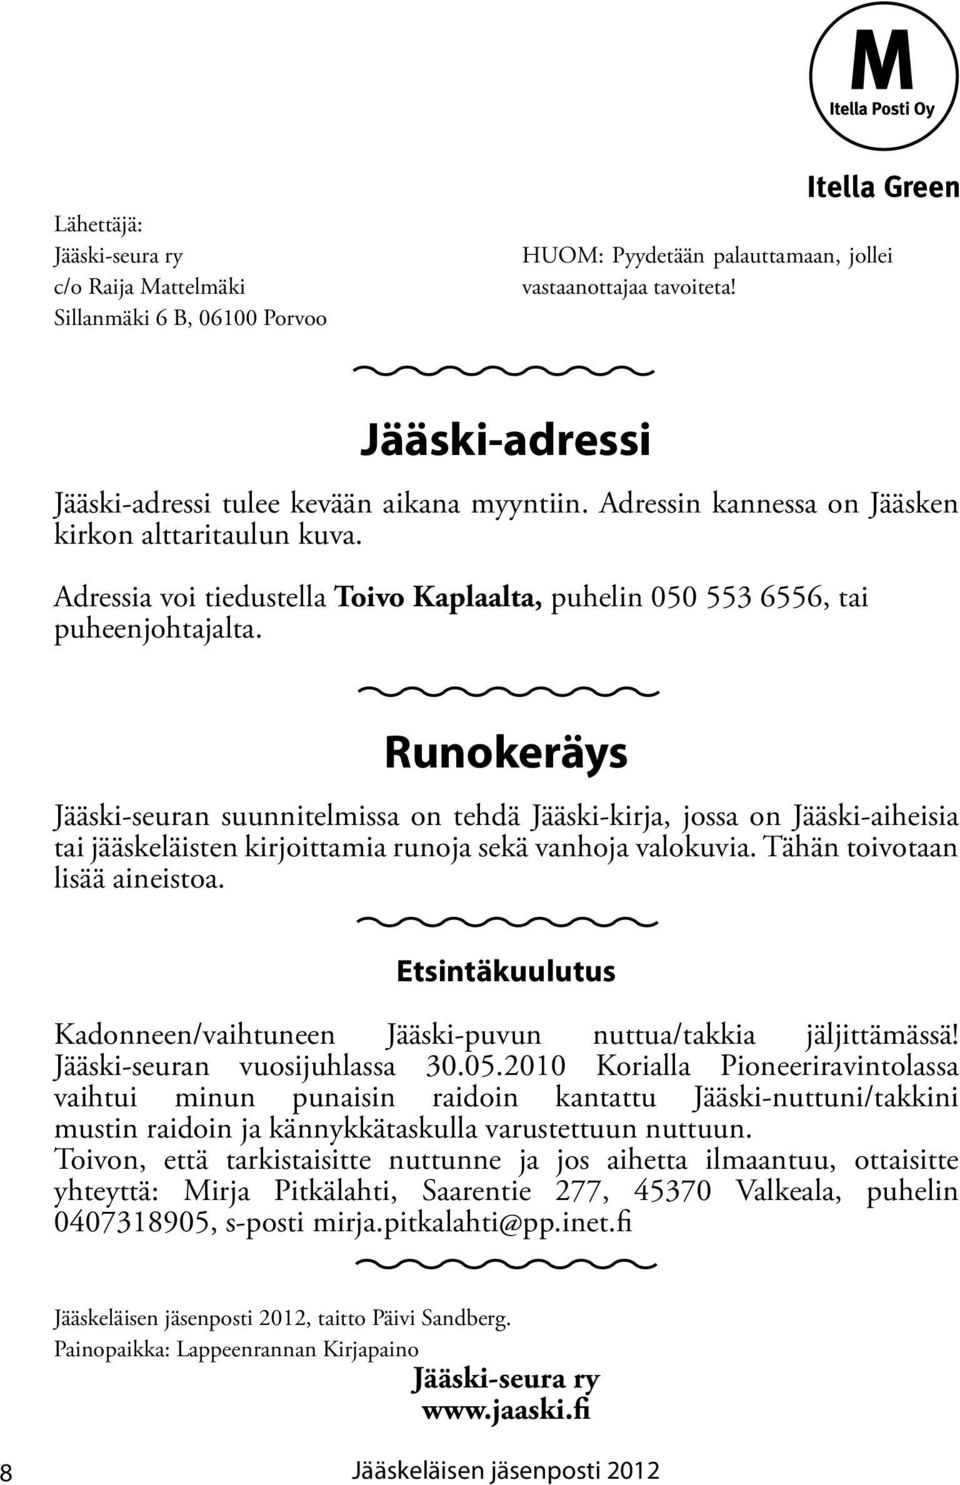 Runokeräys Jääski-seuran suunnitelmissa on tehdä Jääski-kirja, jossa on Jääski-aiheisia tai jääskeläisten kirjoittamia runoja sekä vanhoja valokuvia. Tähän toivotaan lisää aineistoa.